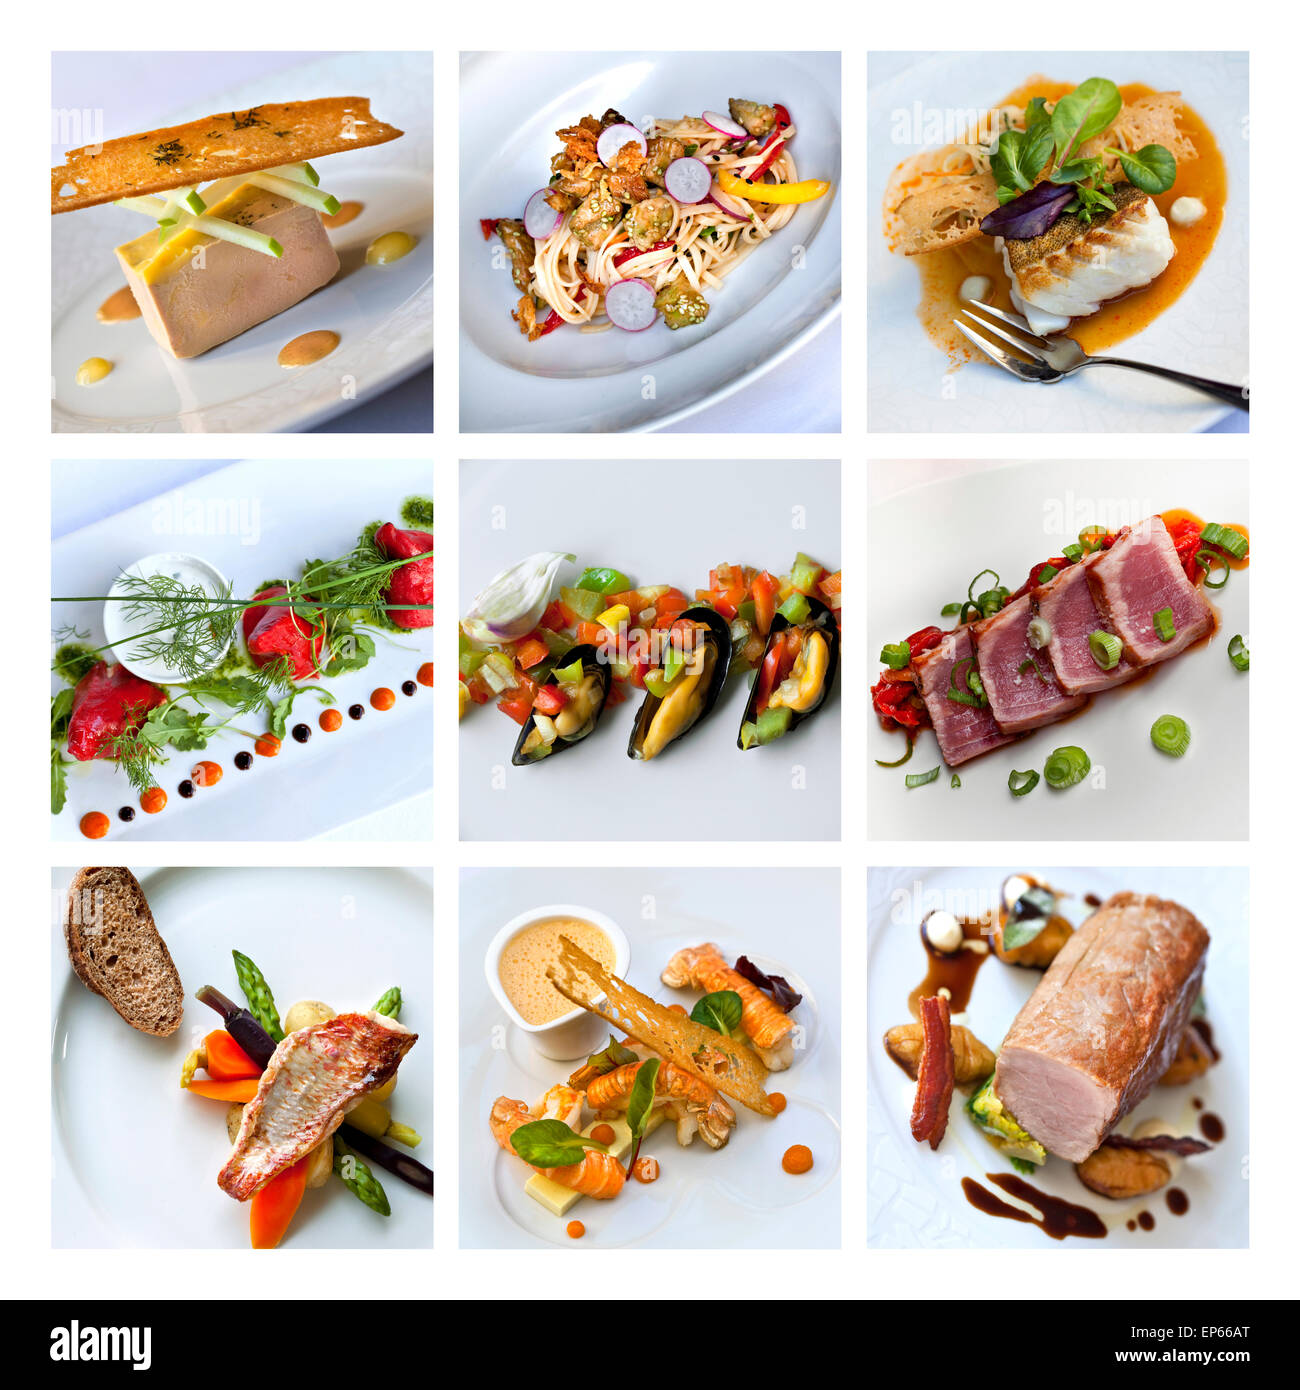 Gastronomie und französische Gerichte auf einer collage Stockfoto